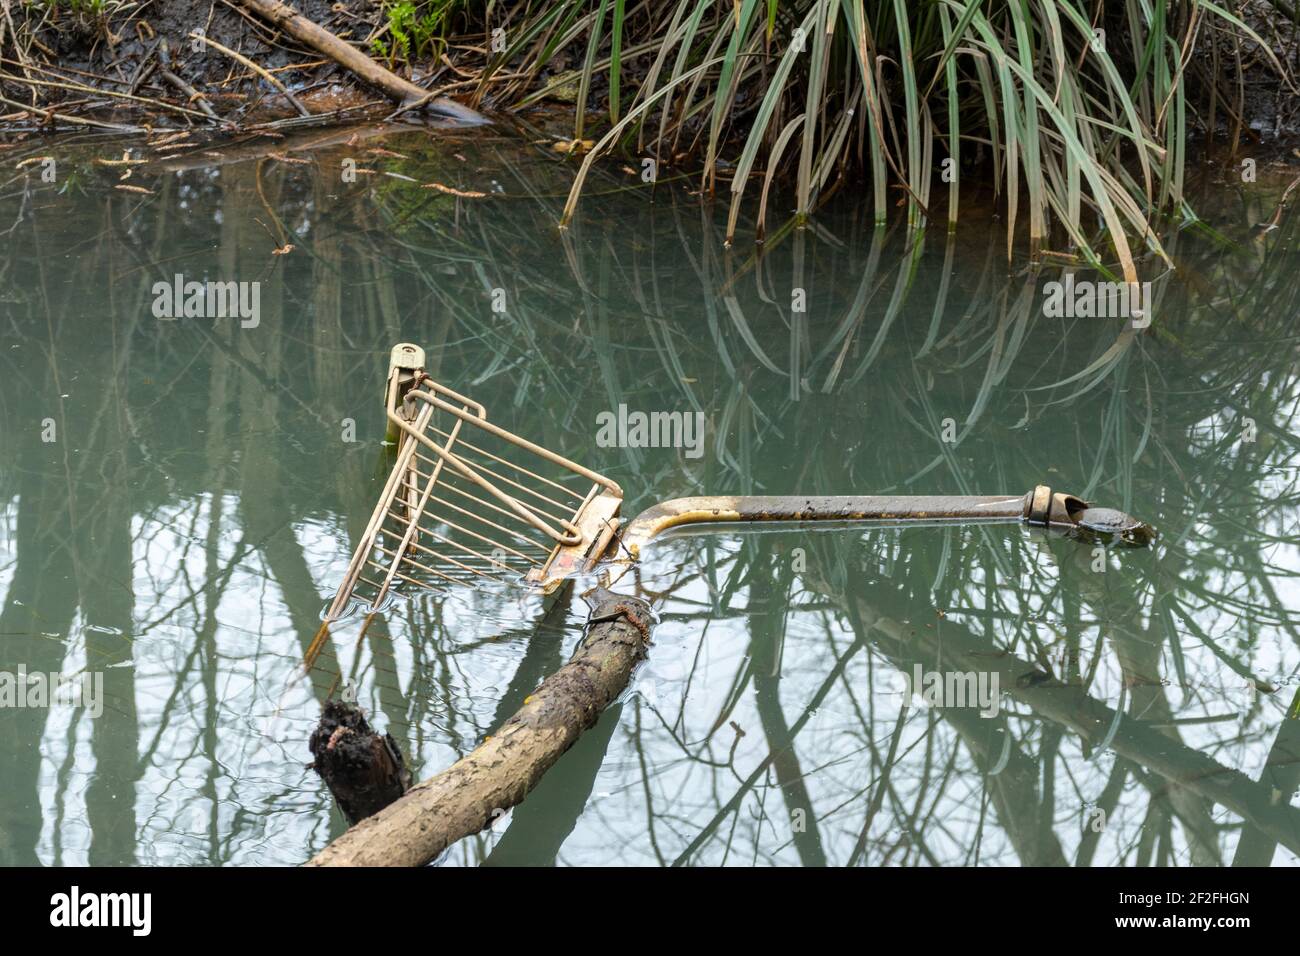 Un chariot ou un chariot est jeté dans une rivière, au Royaume-Uni Banque D'Images